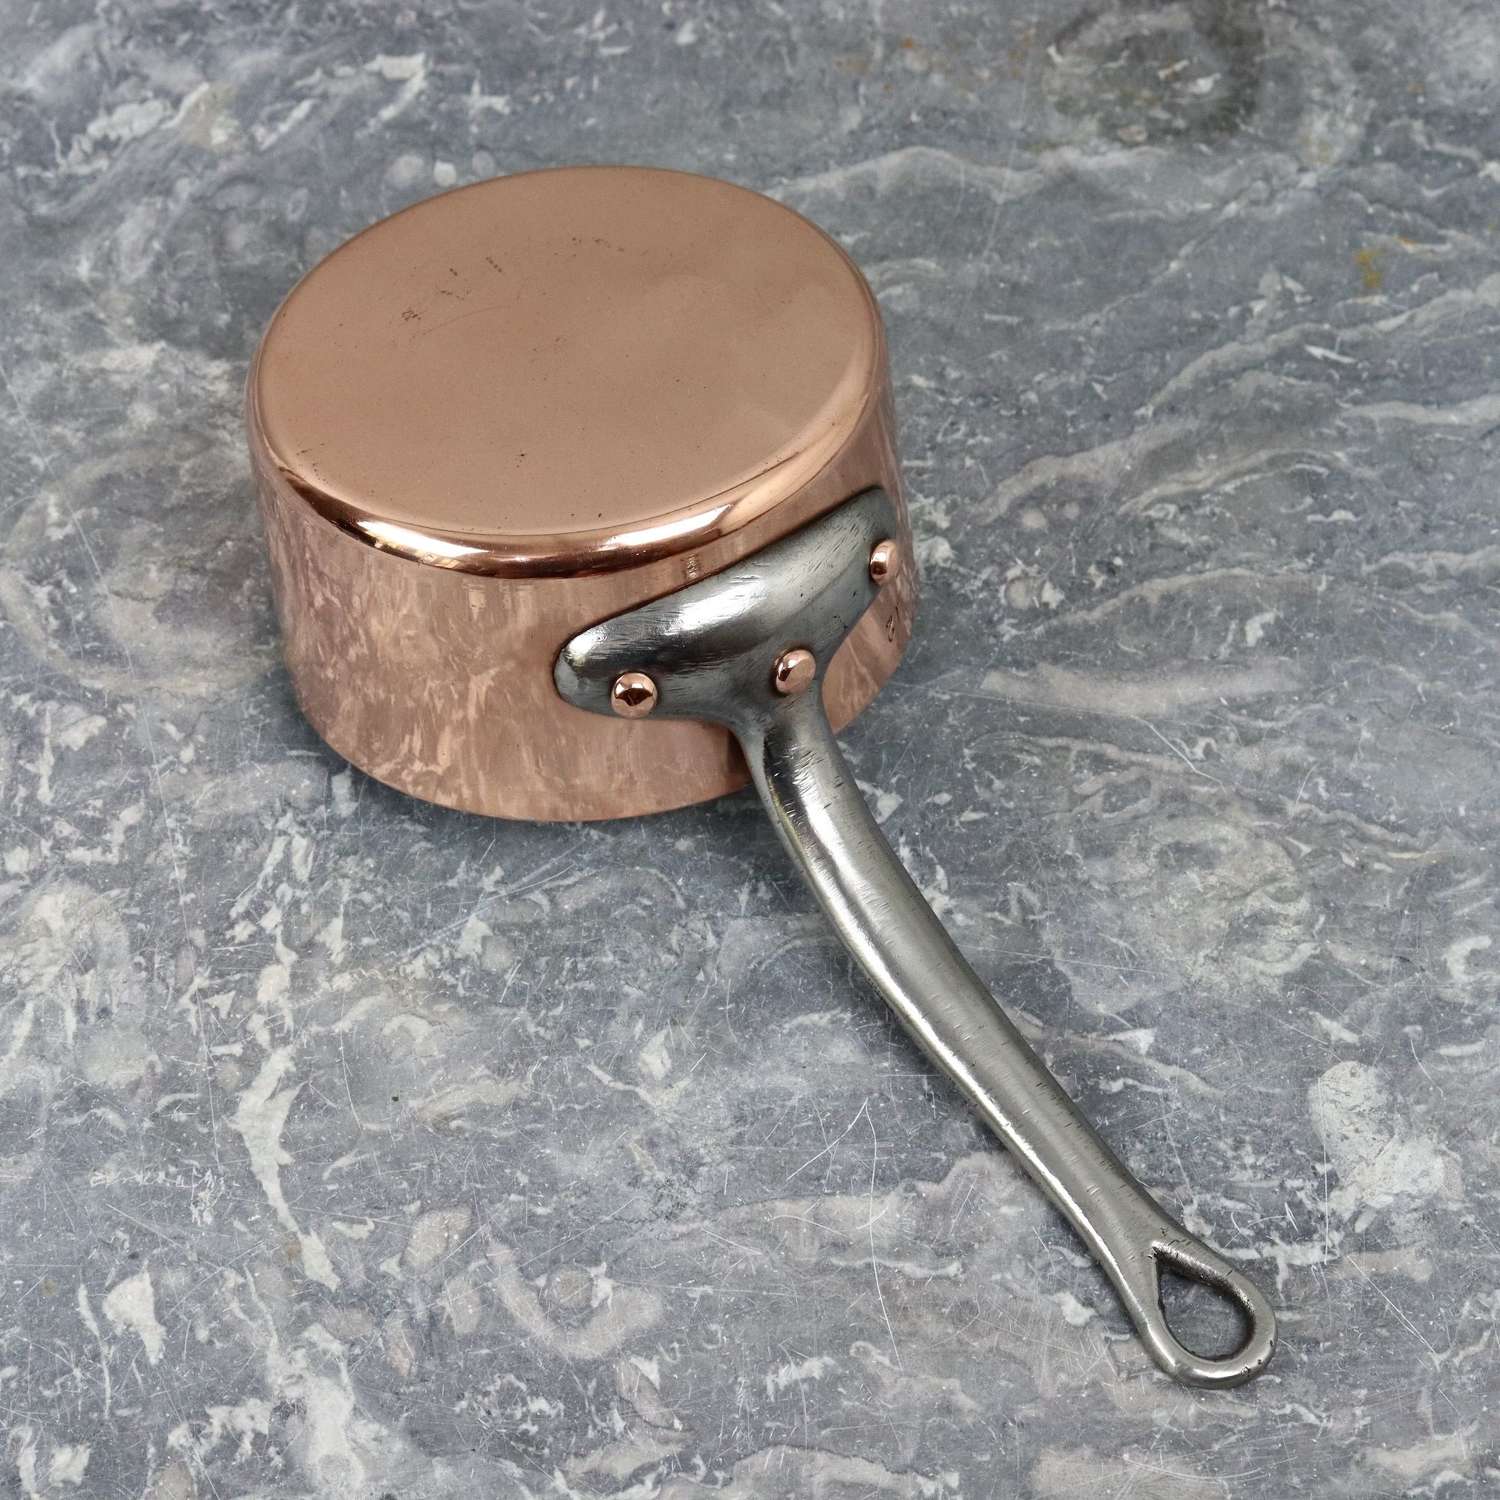 Small, French copper saucepan